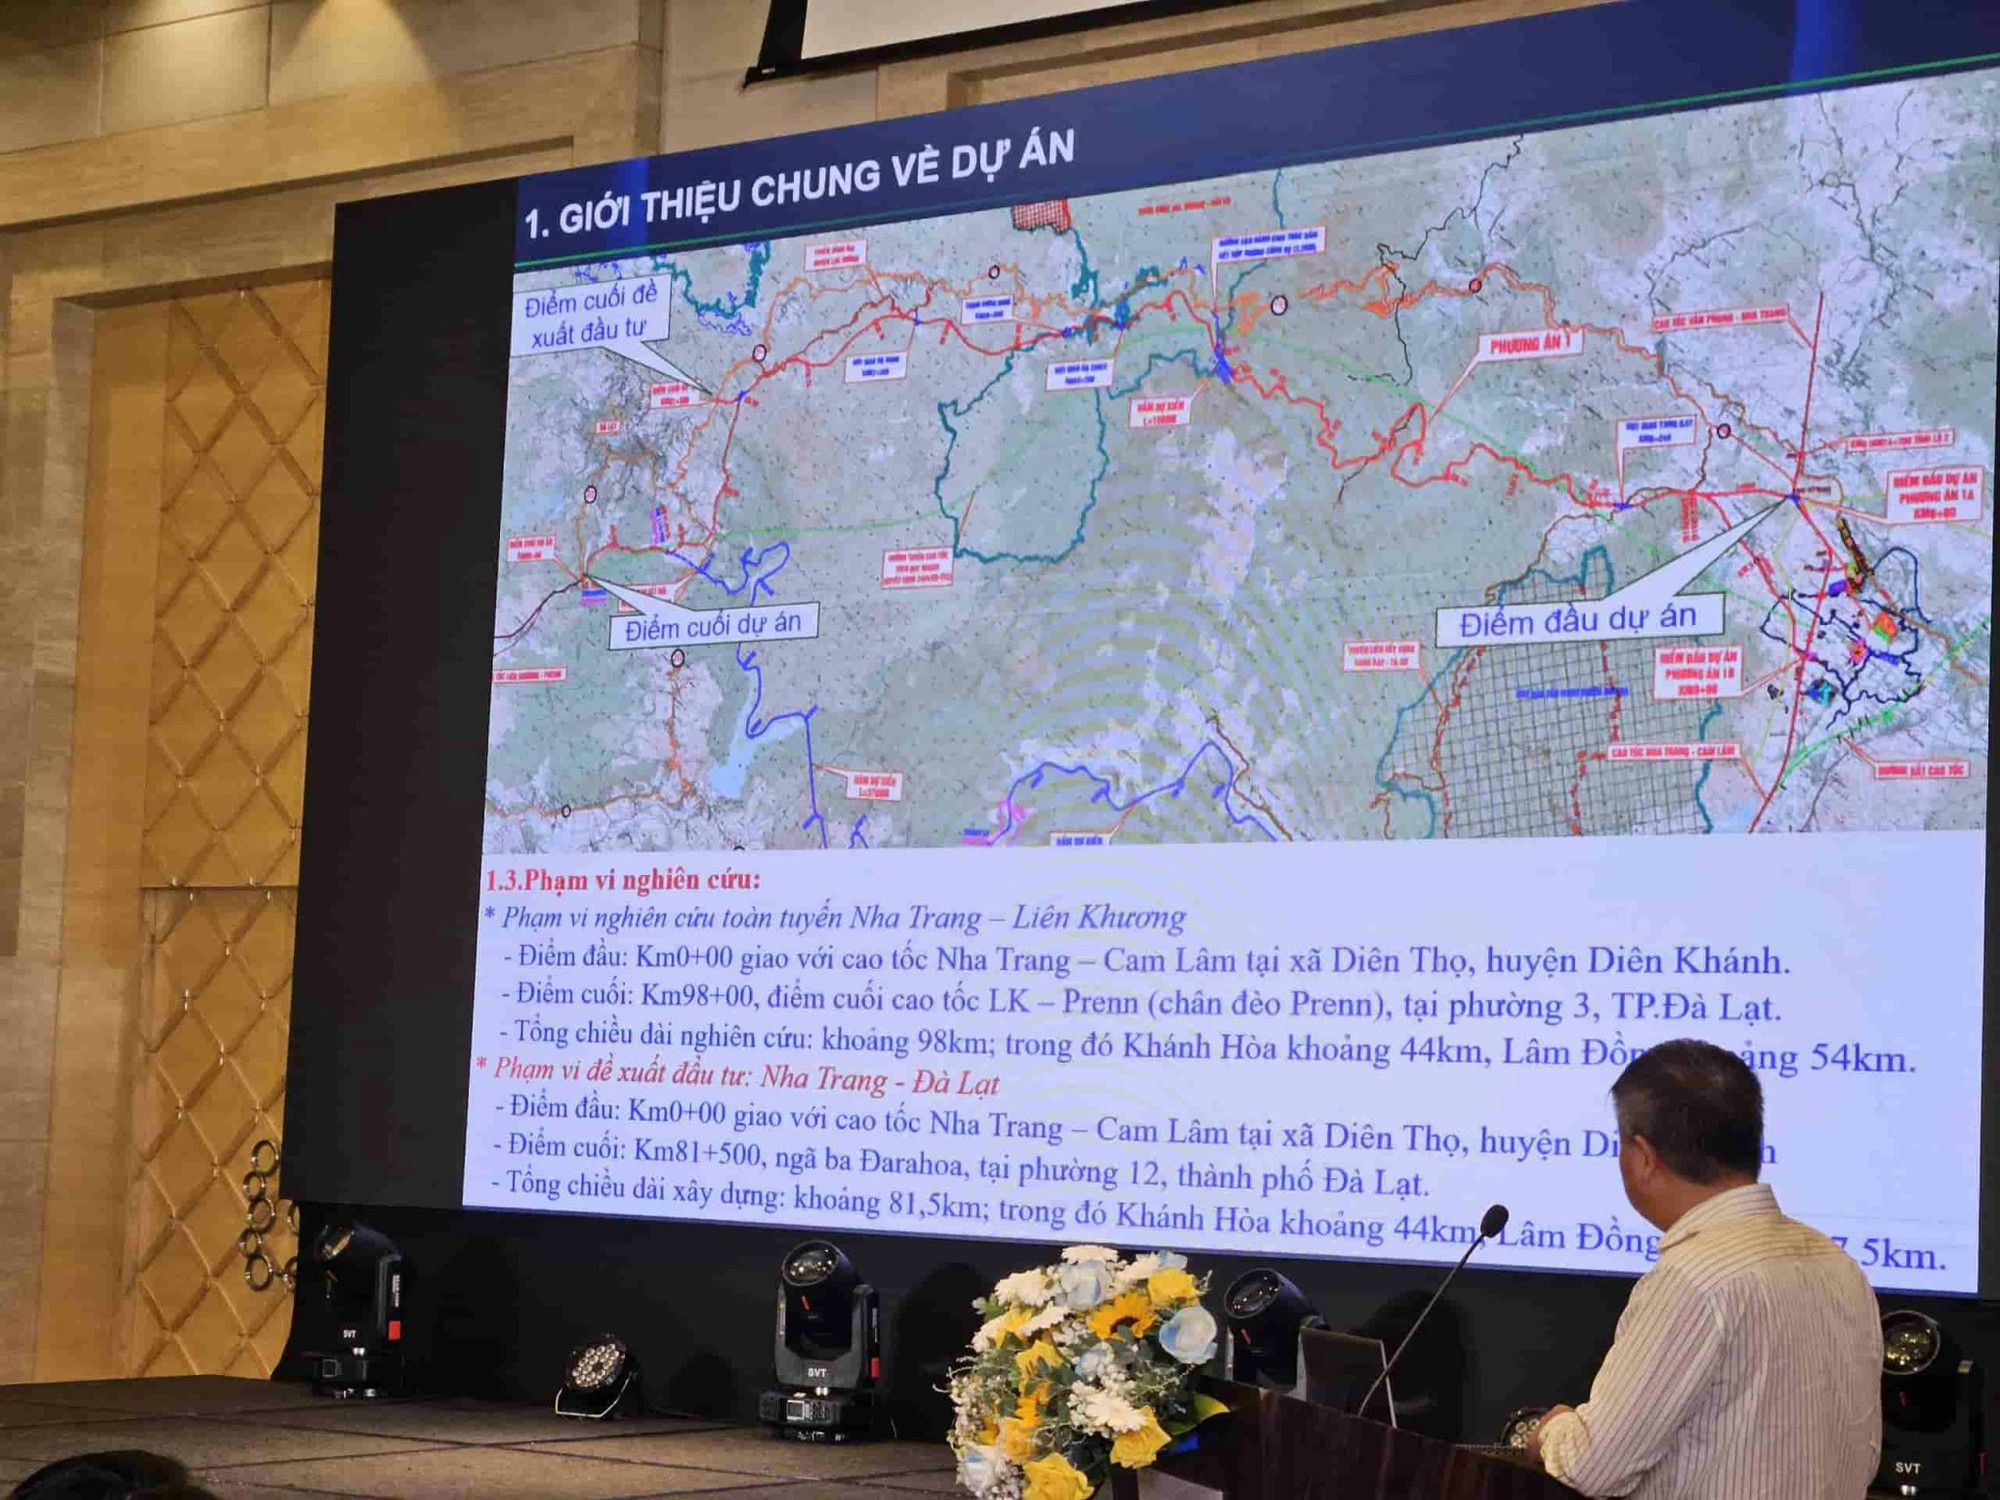 Thống nhất chủ trương xây dựng cao tốc Nha Trang - Đà Lạt dài hơn 80km - Ảnh 1.